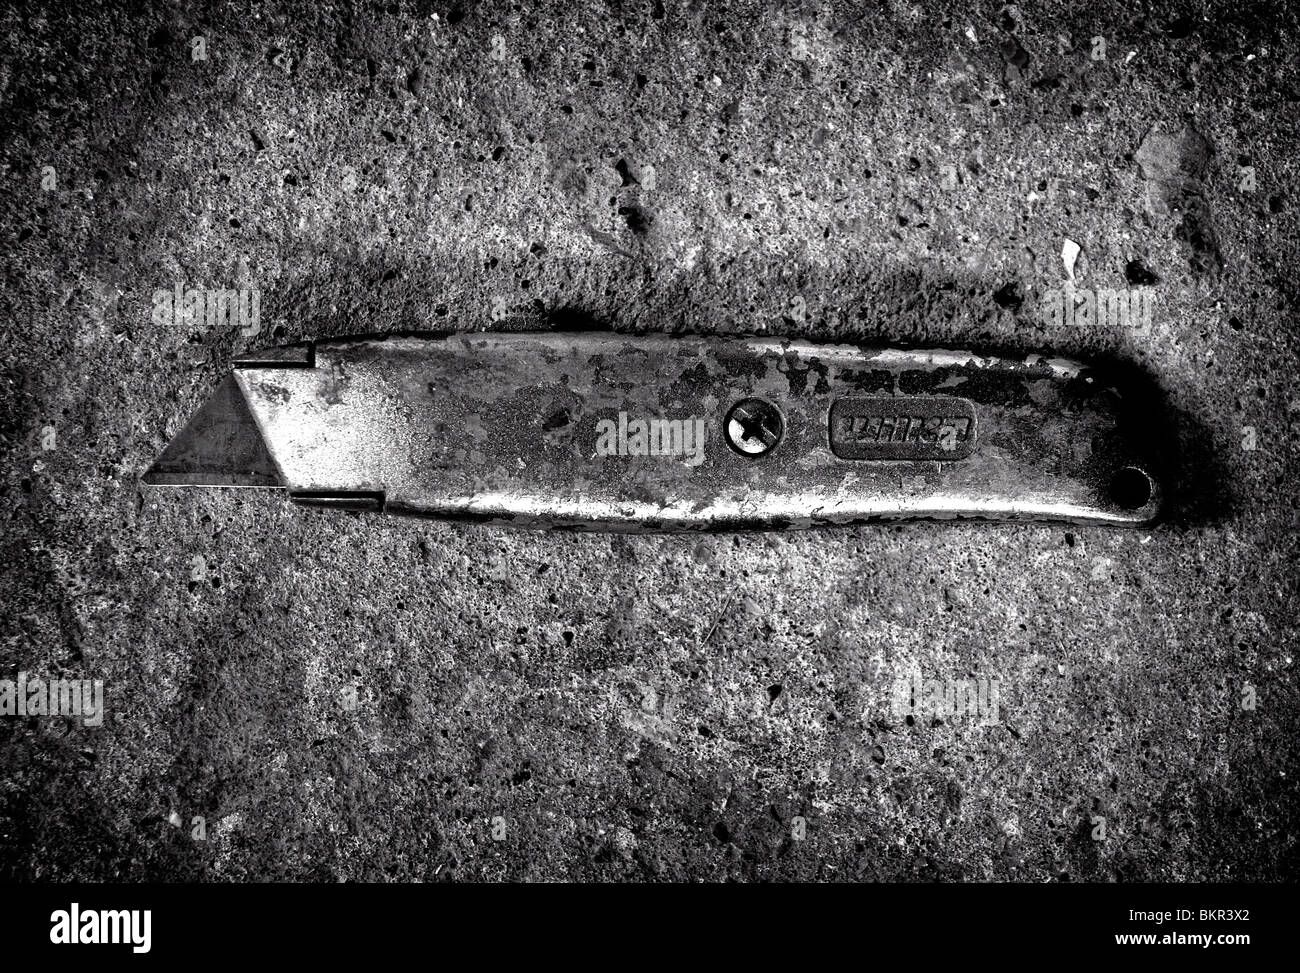 Eine gut genutzte Cuttermesser fotografiert auf einem Betonboden. Stockfoto